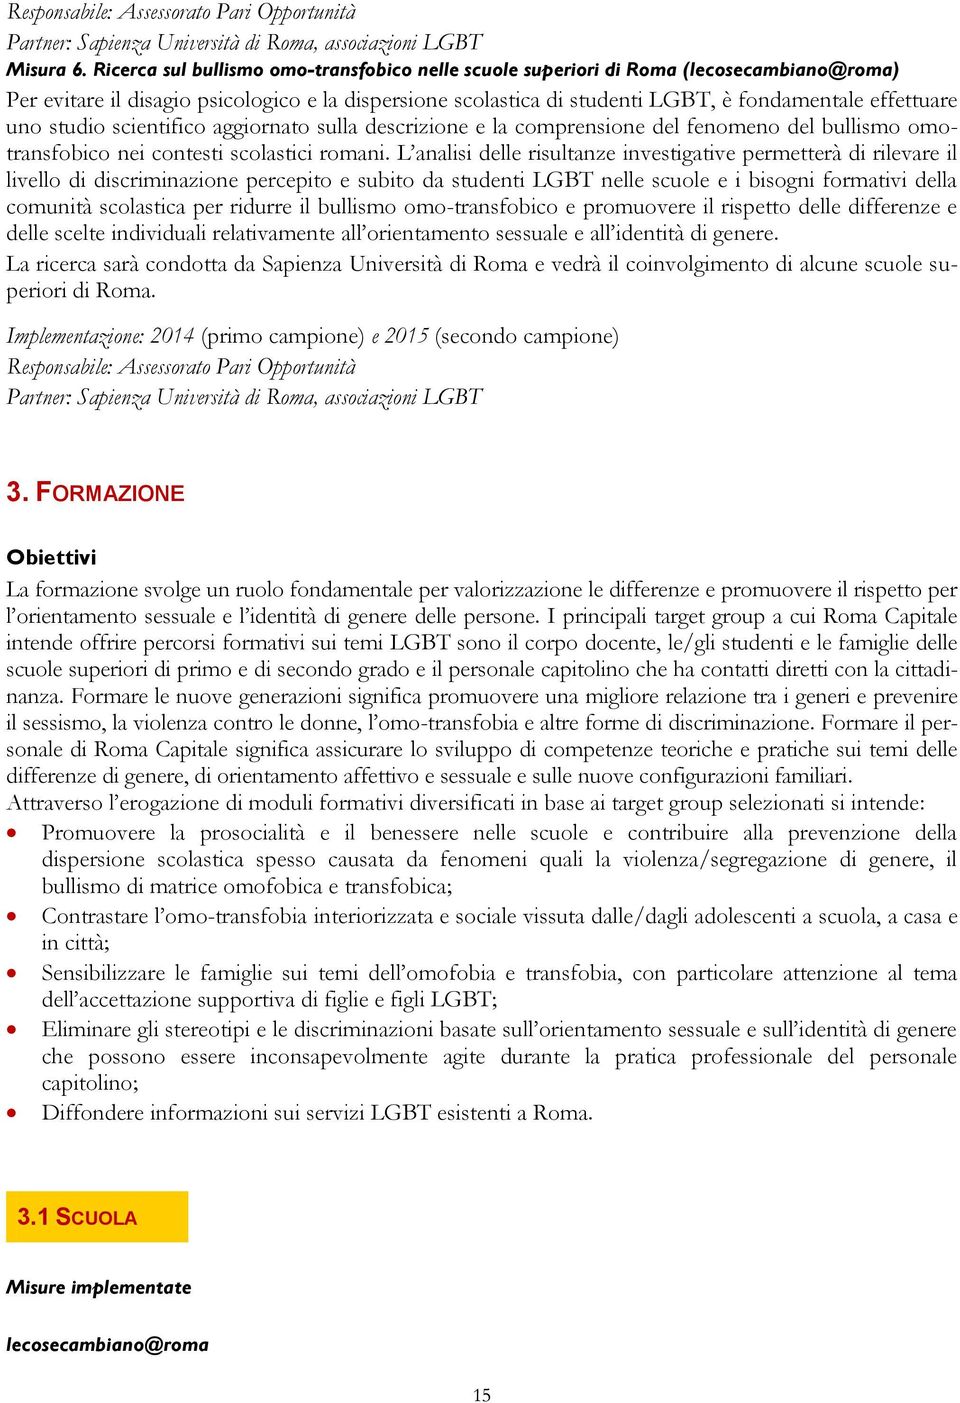 uno studio scientifico aggiornato sulla descrizione e la comprensione del fenomeno del bullismo omotransfobico nei contesti scolastici romani.